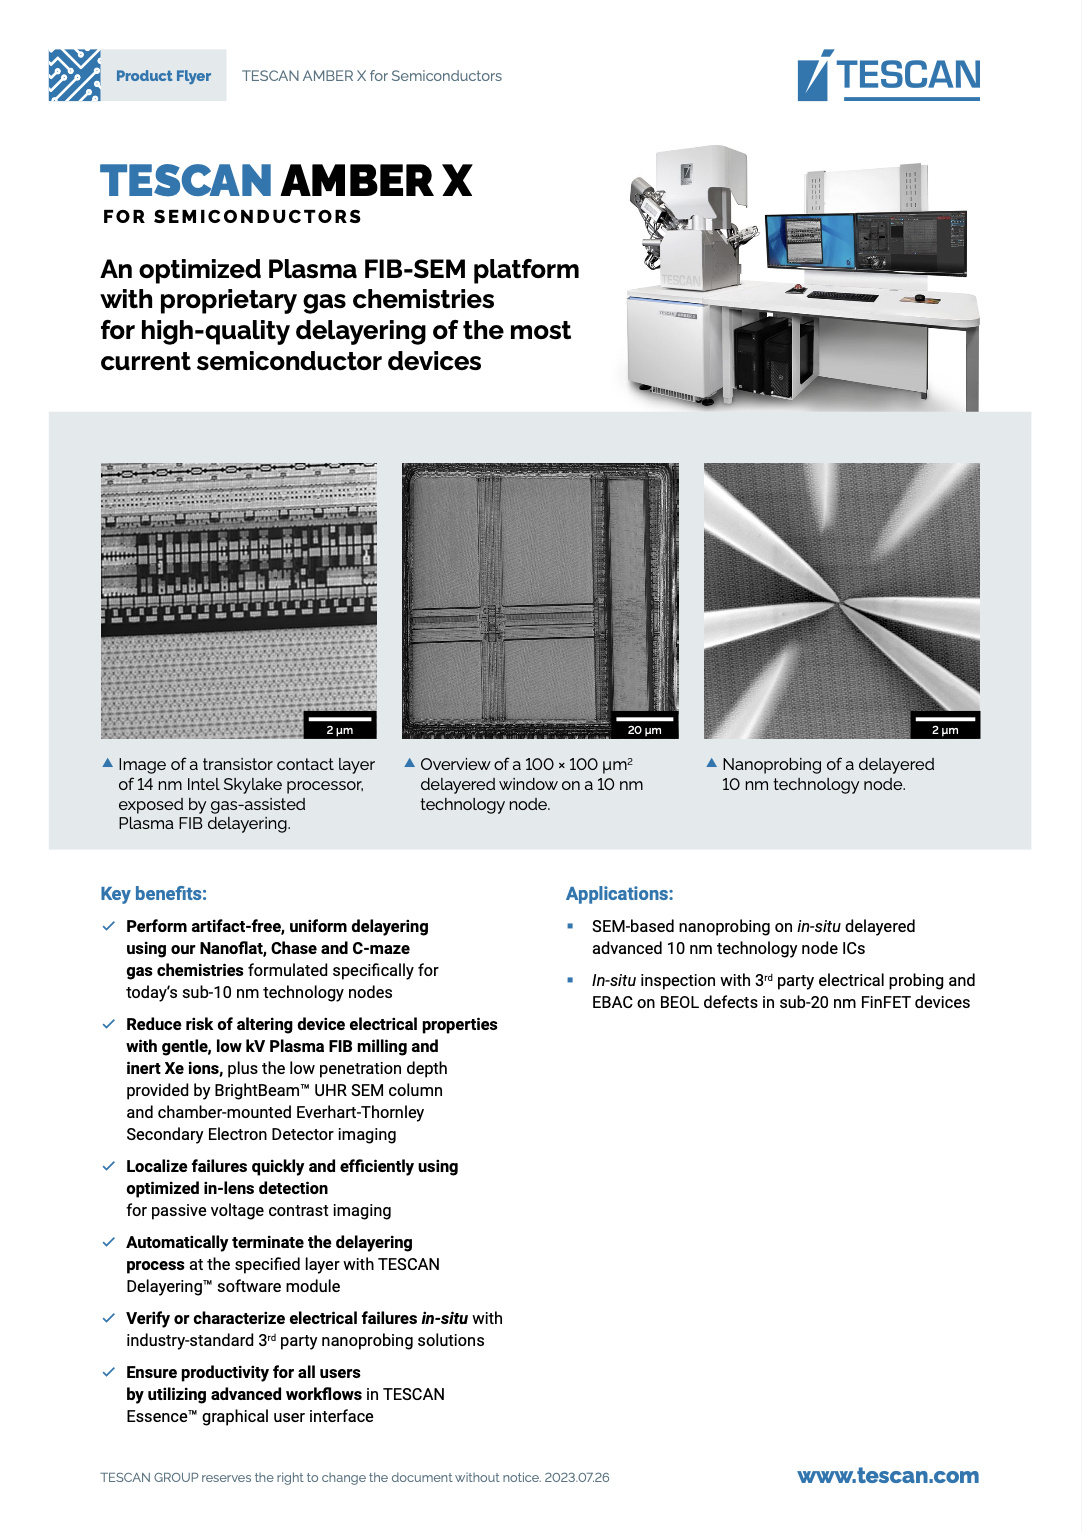 Eine optimierte Plasma-FIB-SEM-Plattform mit firmeneigenen Gaschemien für die qualitativ hochwertige Verzögerung der gängigsten Halbleiterbauelemente